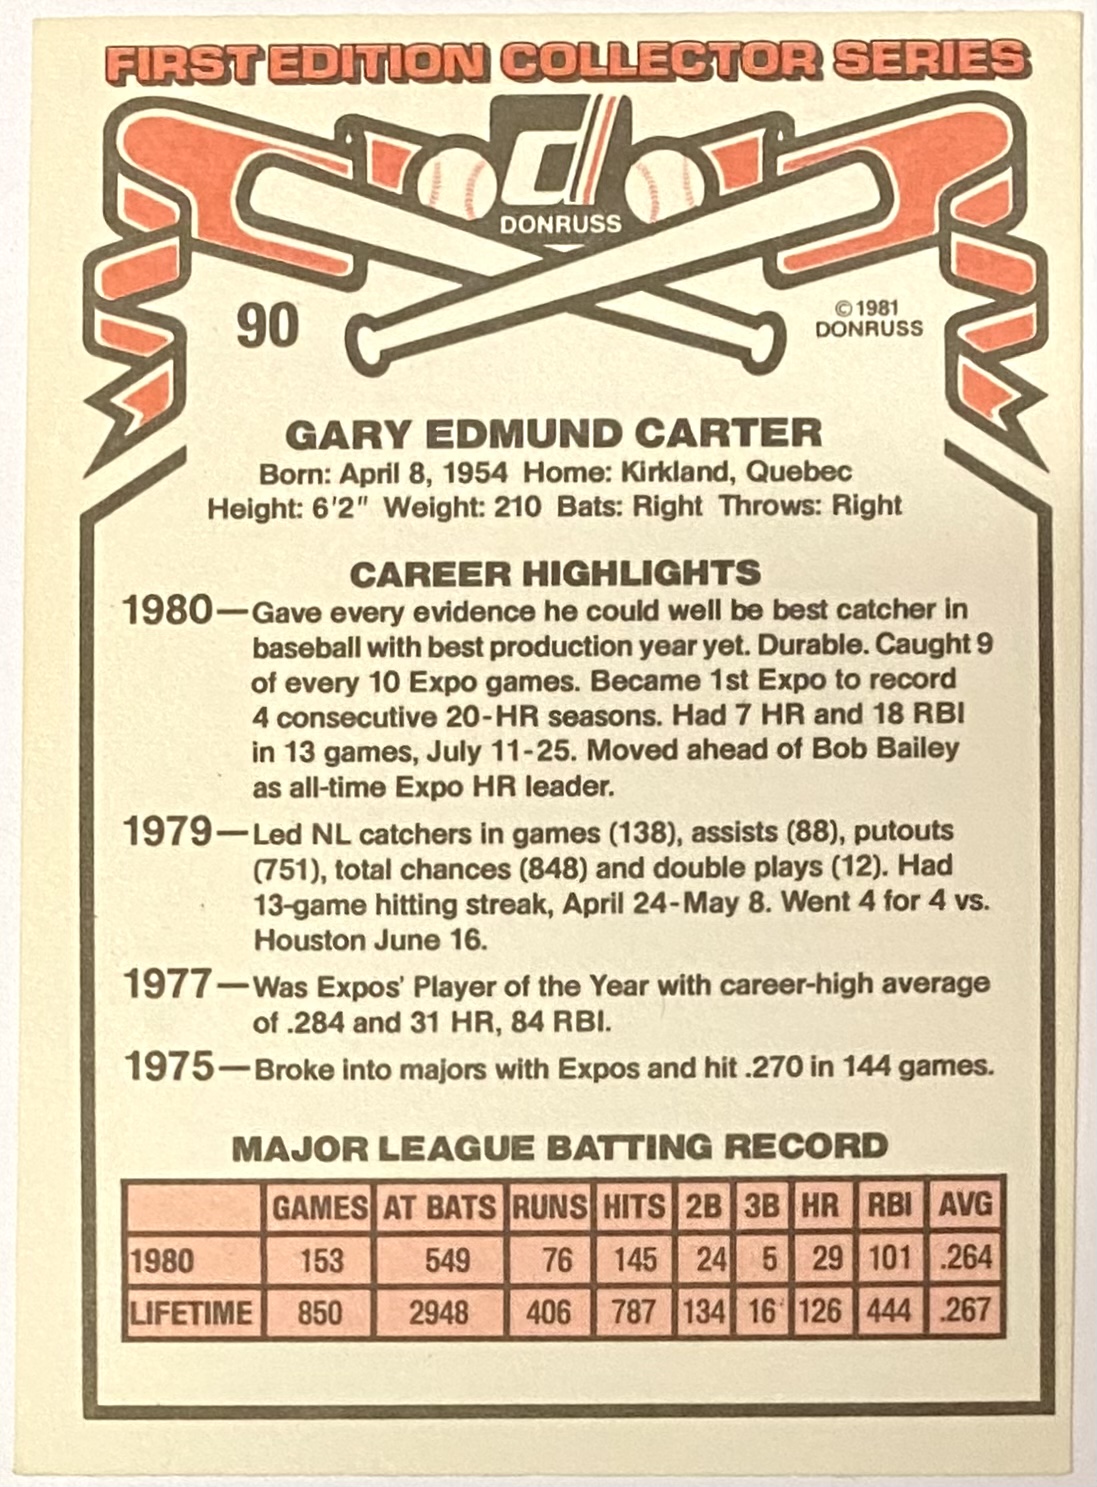 gary carter baseball card